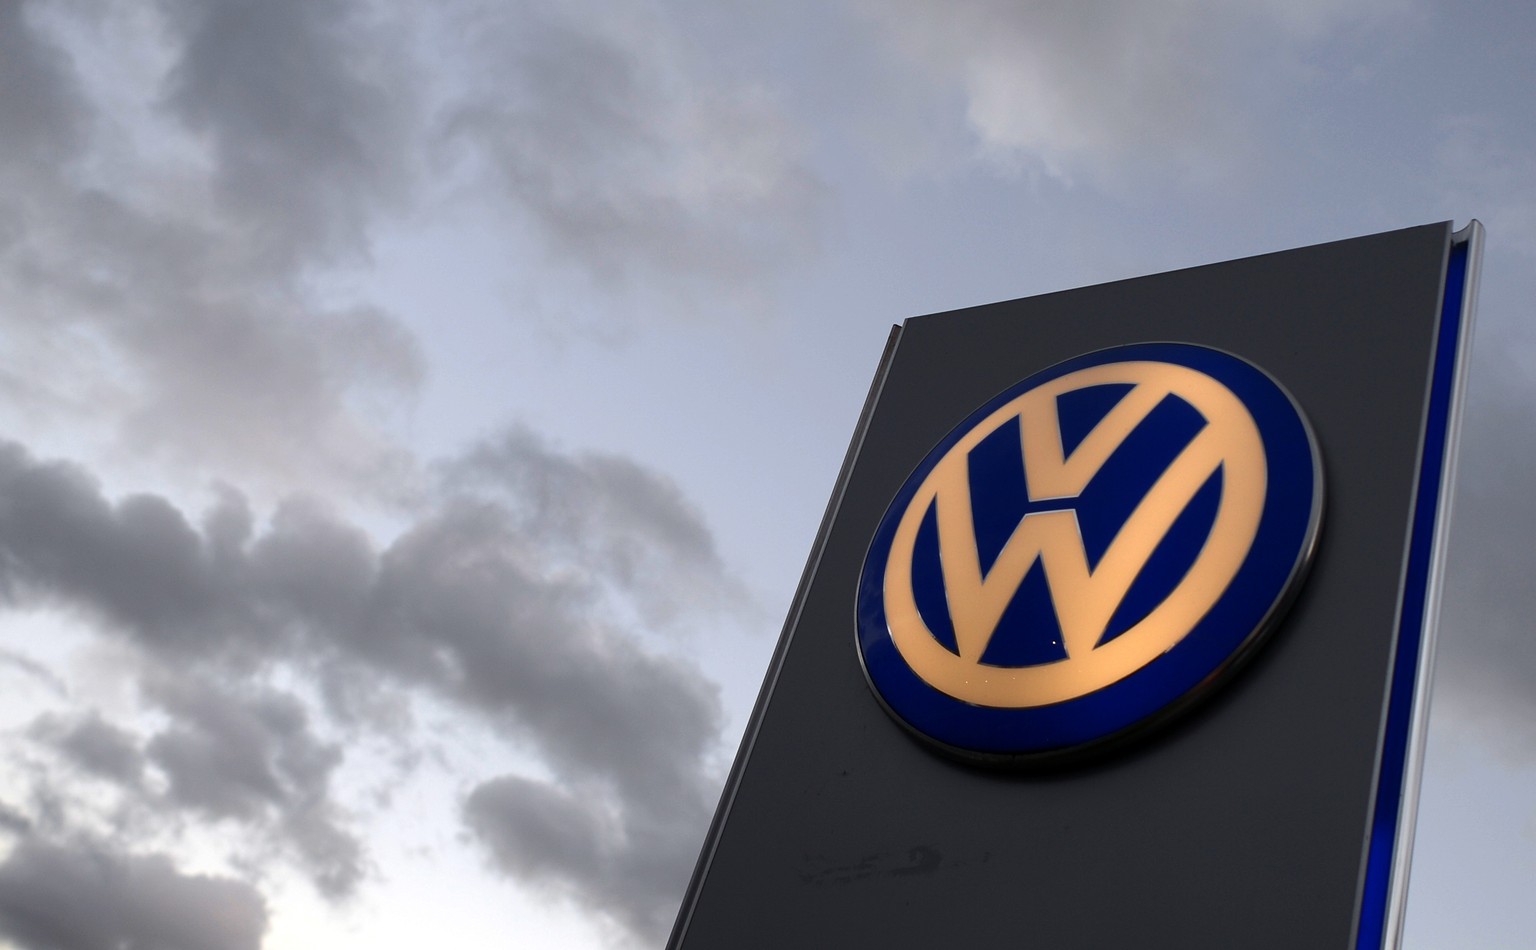 Hinter VW ziehen dunkle Wolken auf - ein düsteres Kapitel der Firmengeschichte VWs wird aufgeschlagen